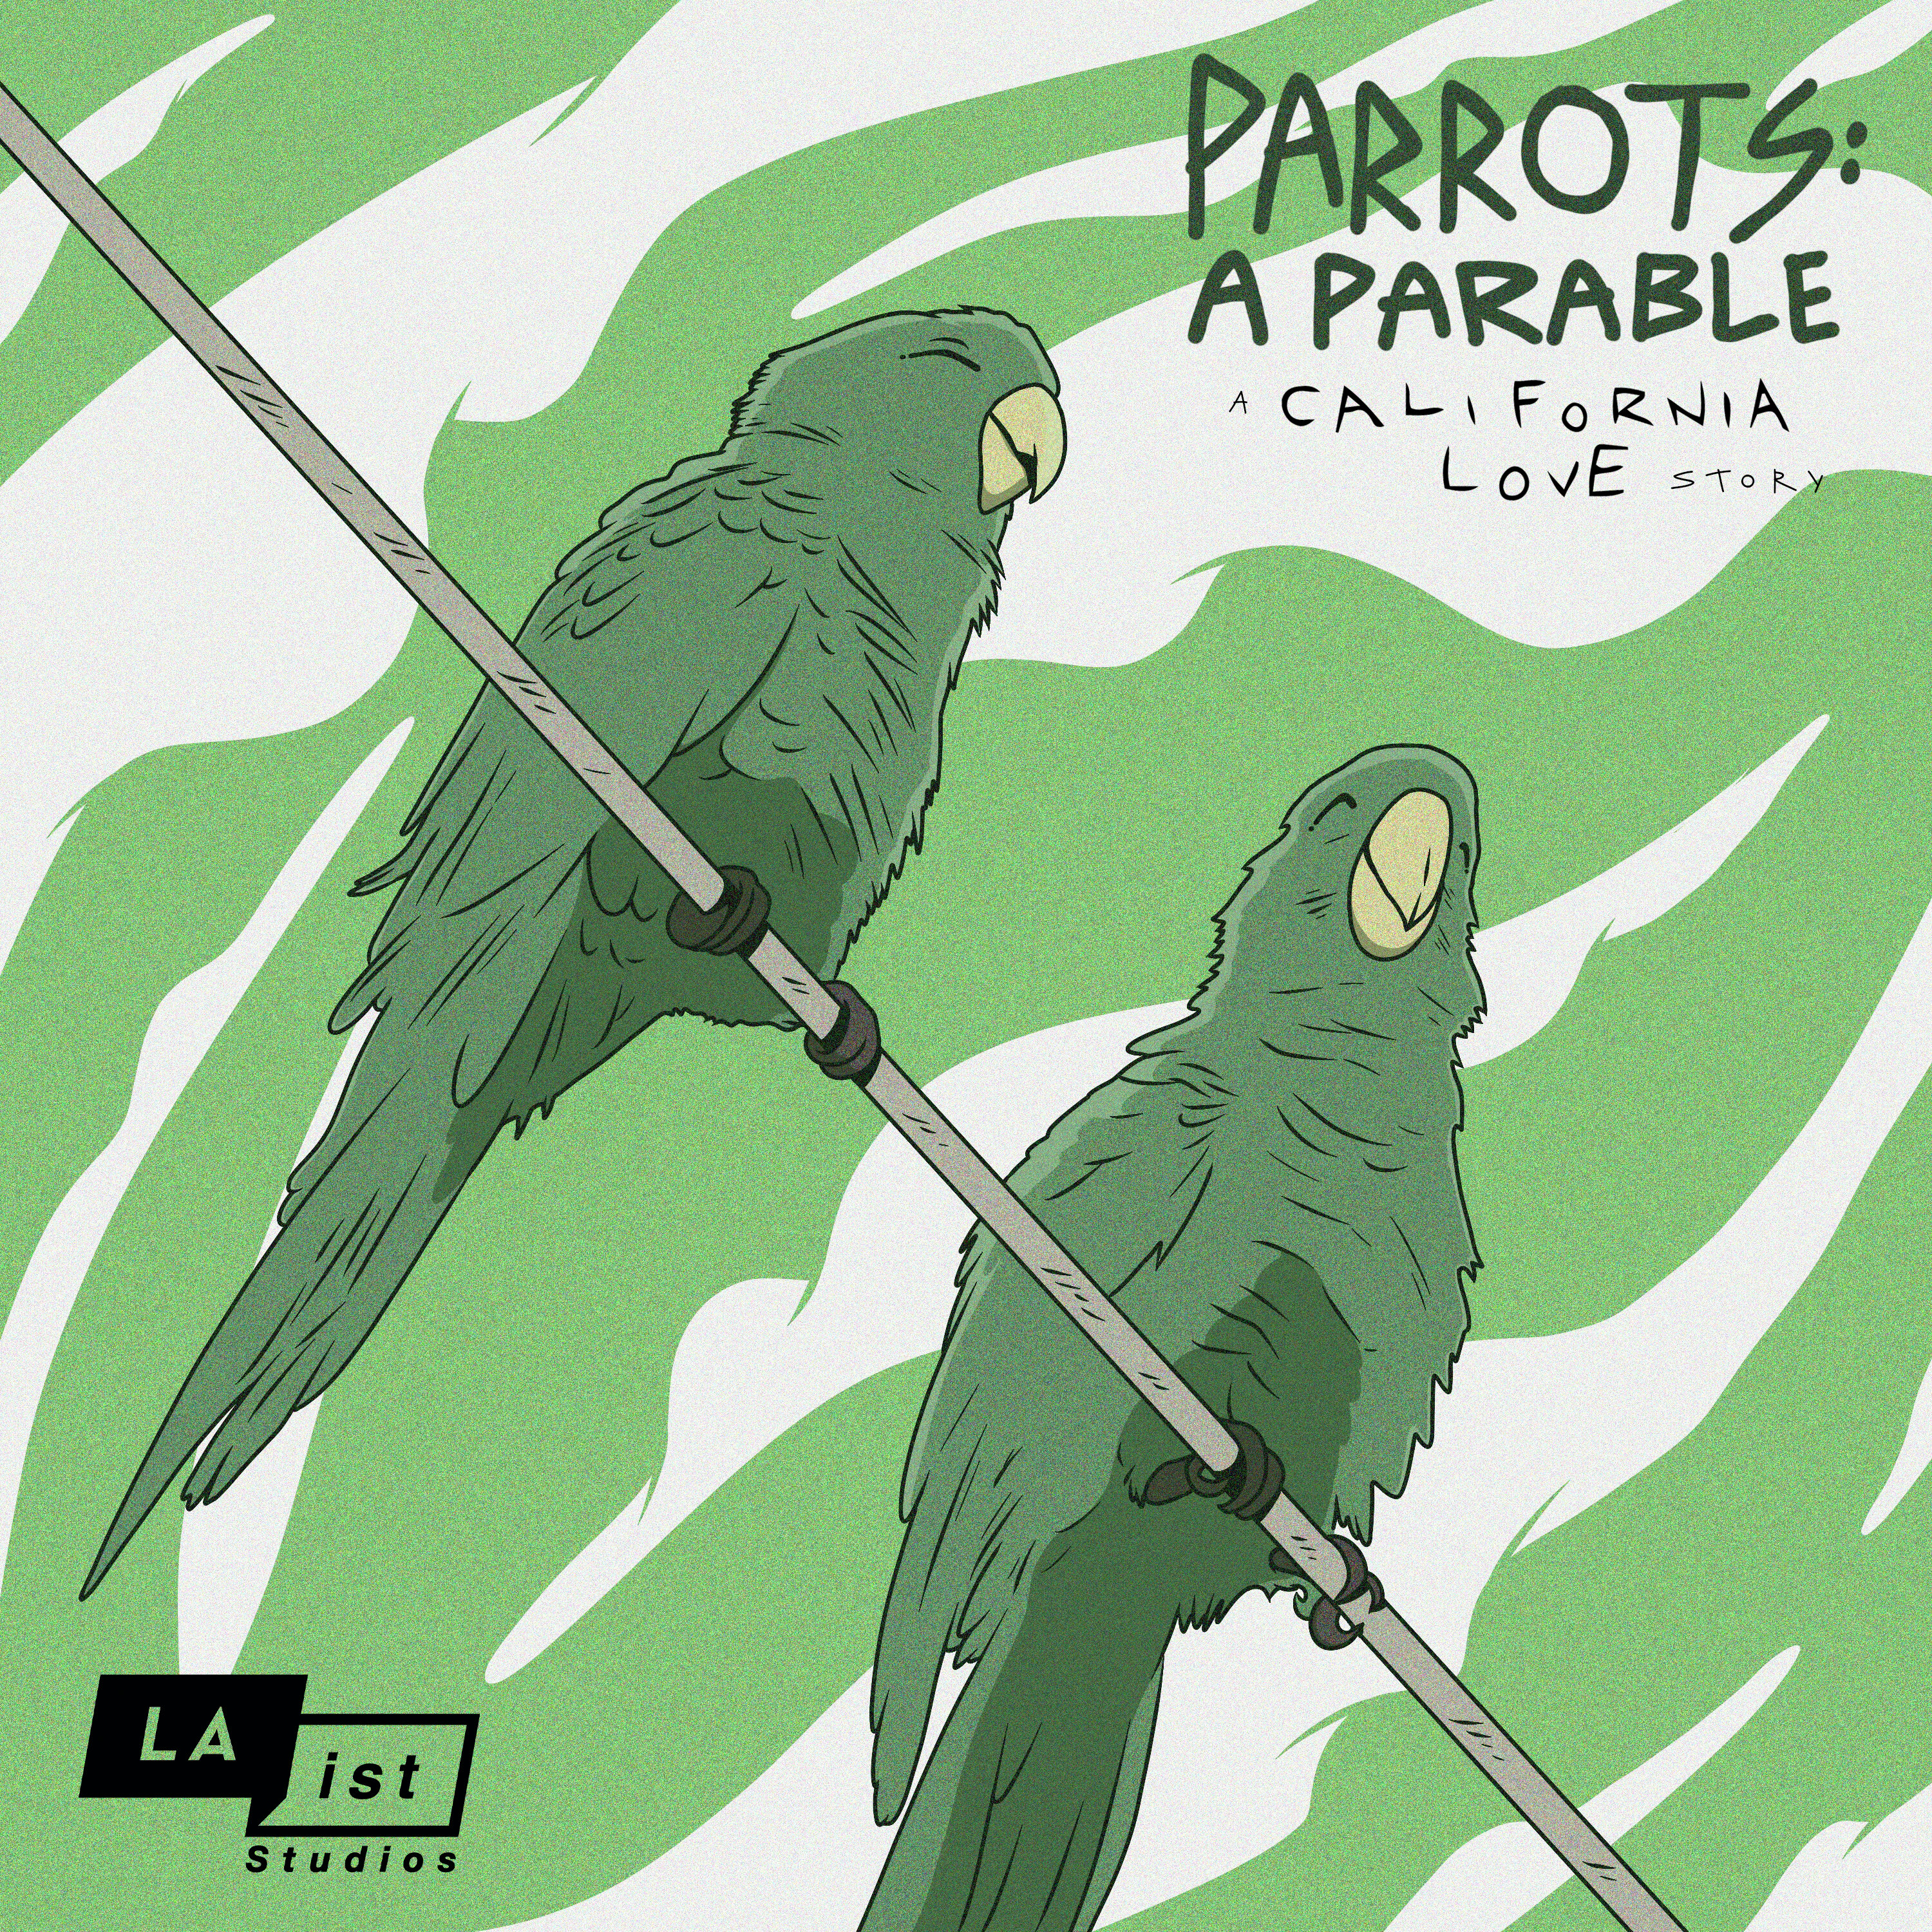 Parrots: A Parable